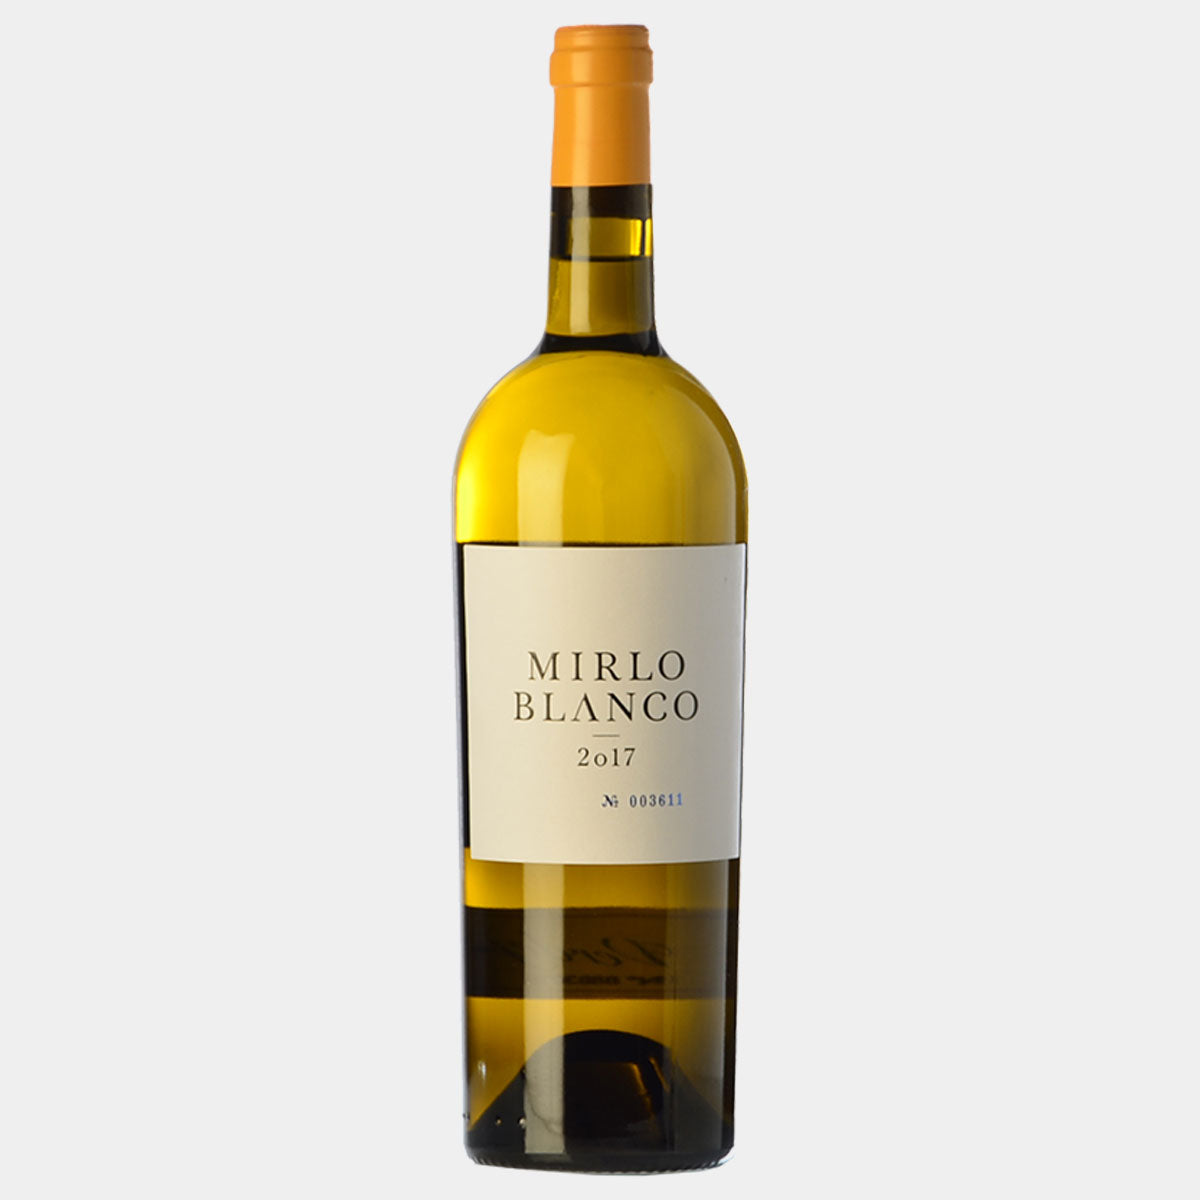 Mirlo Blanco - Wines and Copas Barcelona